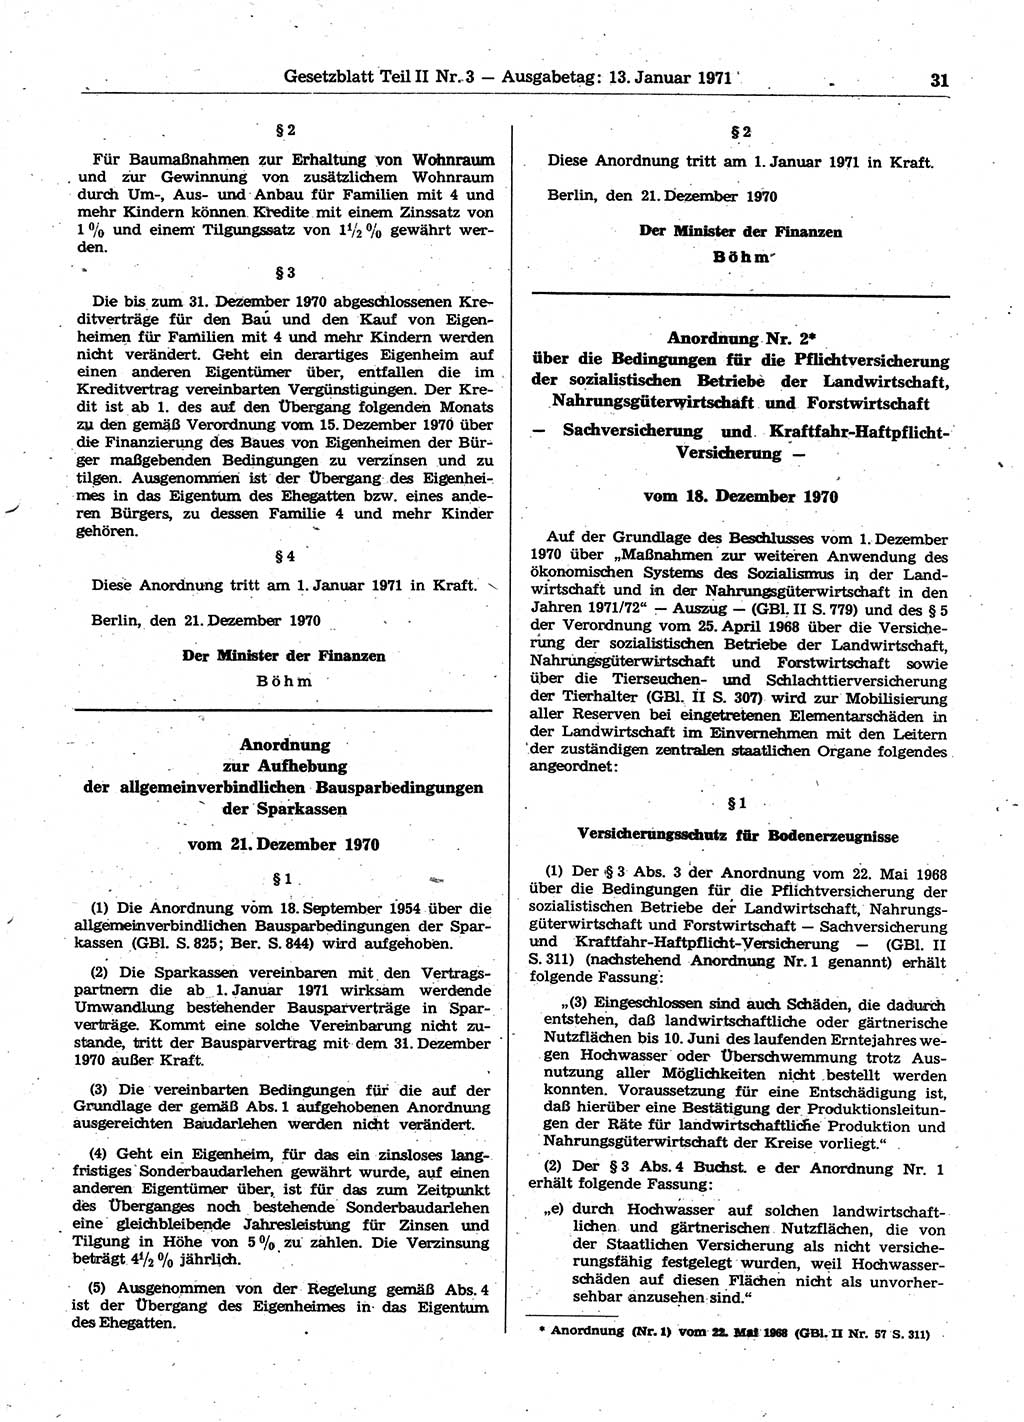 Gesetzblatt (GBl.) der Deutschen Demokratischen Republik (DDR) Teil ⅠⅠ 1971, Seite 31 (GBl. DDR ⅠⅠ 1971, S. 31)